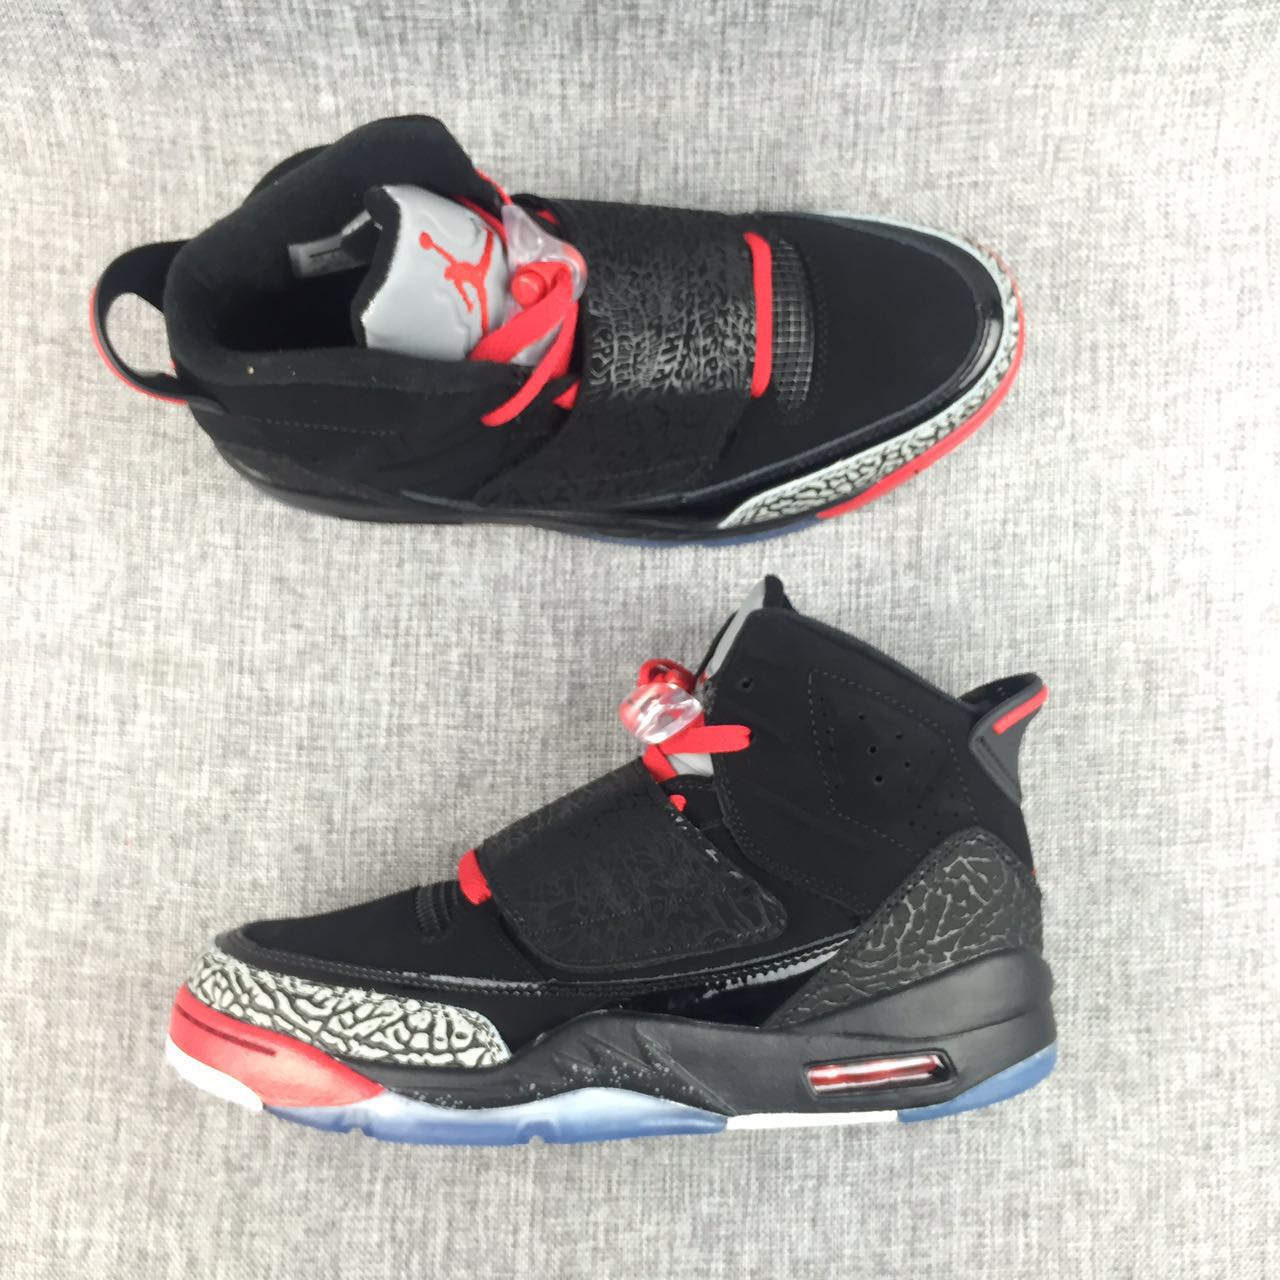 New Air Jordan 5.5 Black Red Grey Shoes